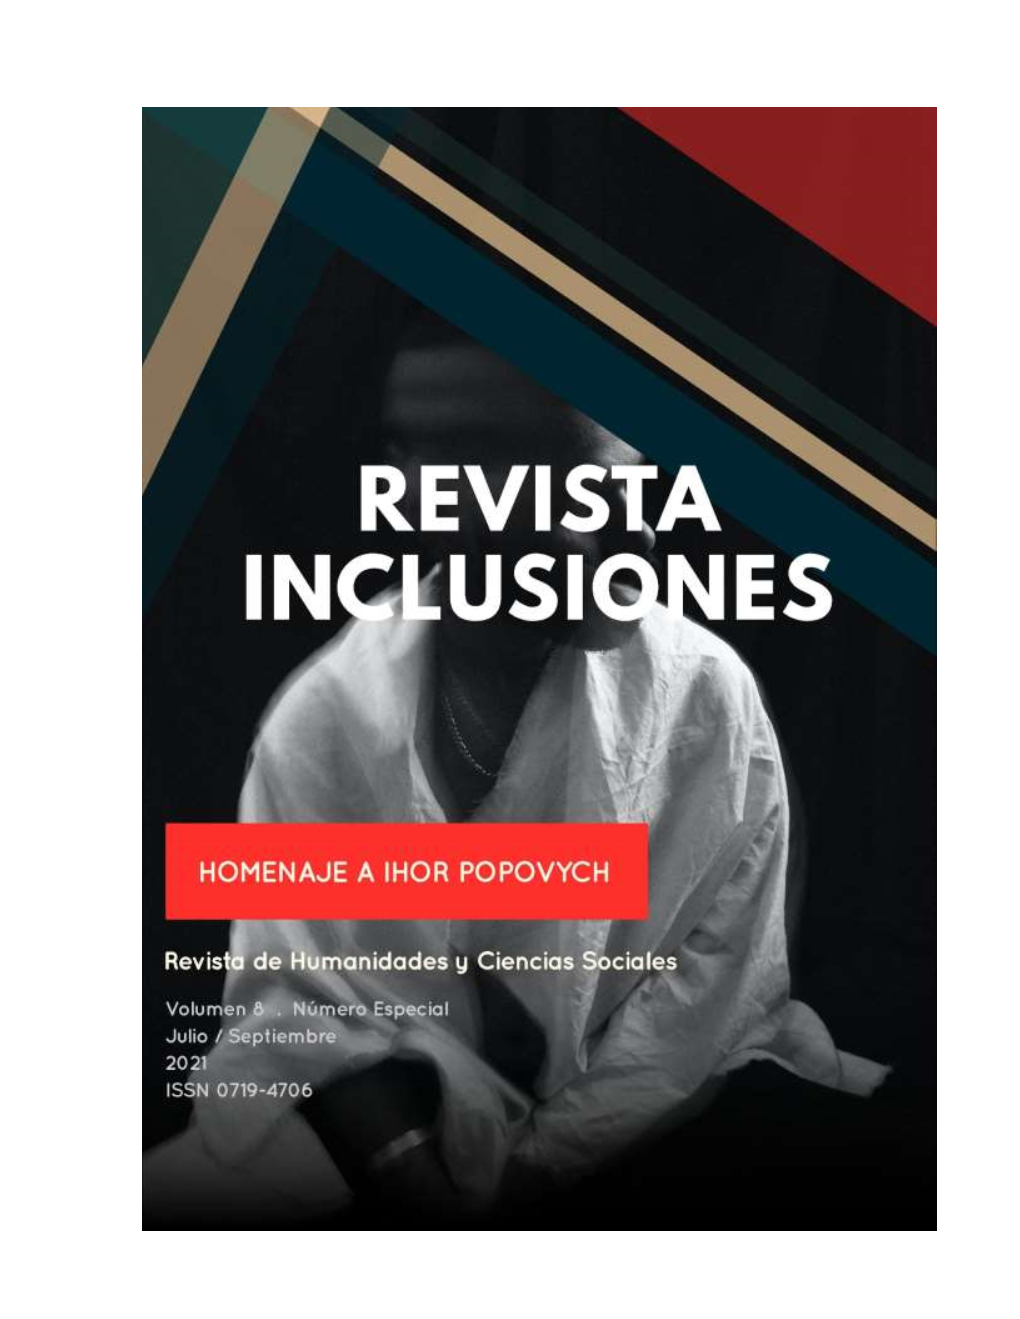 Revista Inclusiones Issn 0719-4706 Volumen 8 – Número Especial – Julio/Septiembre 2021